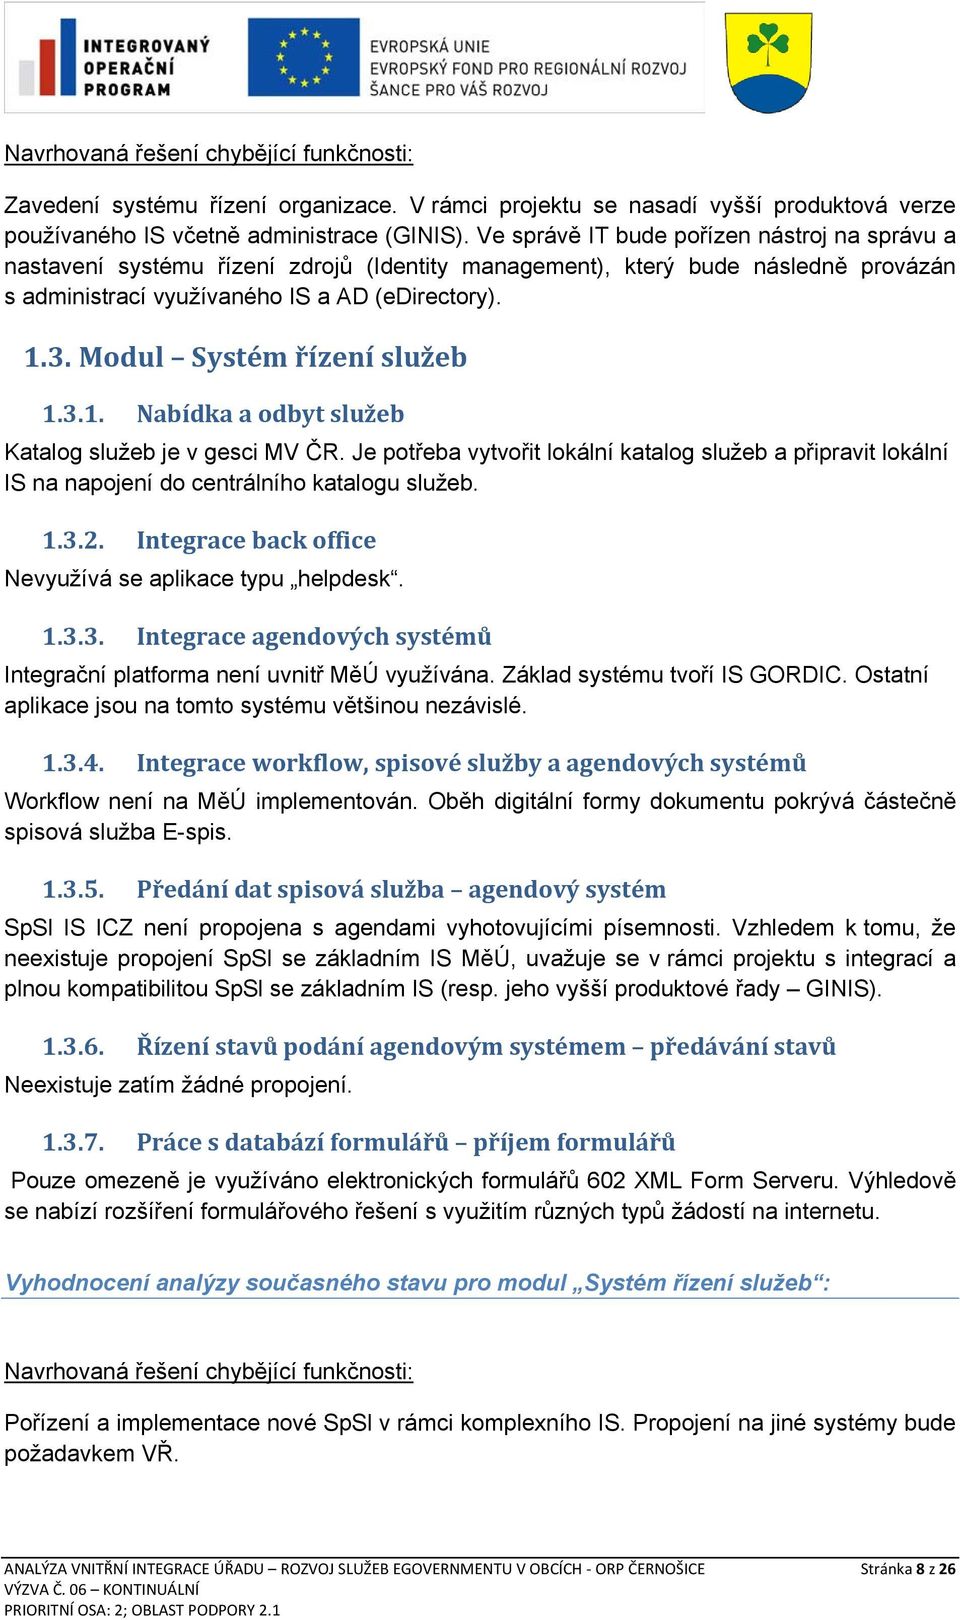 Modul Systém řízení služeb 1.3.1. Nabídka a odbyt služeb Katalog služeb je v gesci MV ČR. Je potřeba vytvořit lokální katalog služeb a připravit lokální IS na napojení do centrálního katalogu služeb.